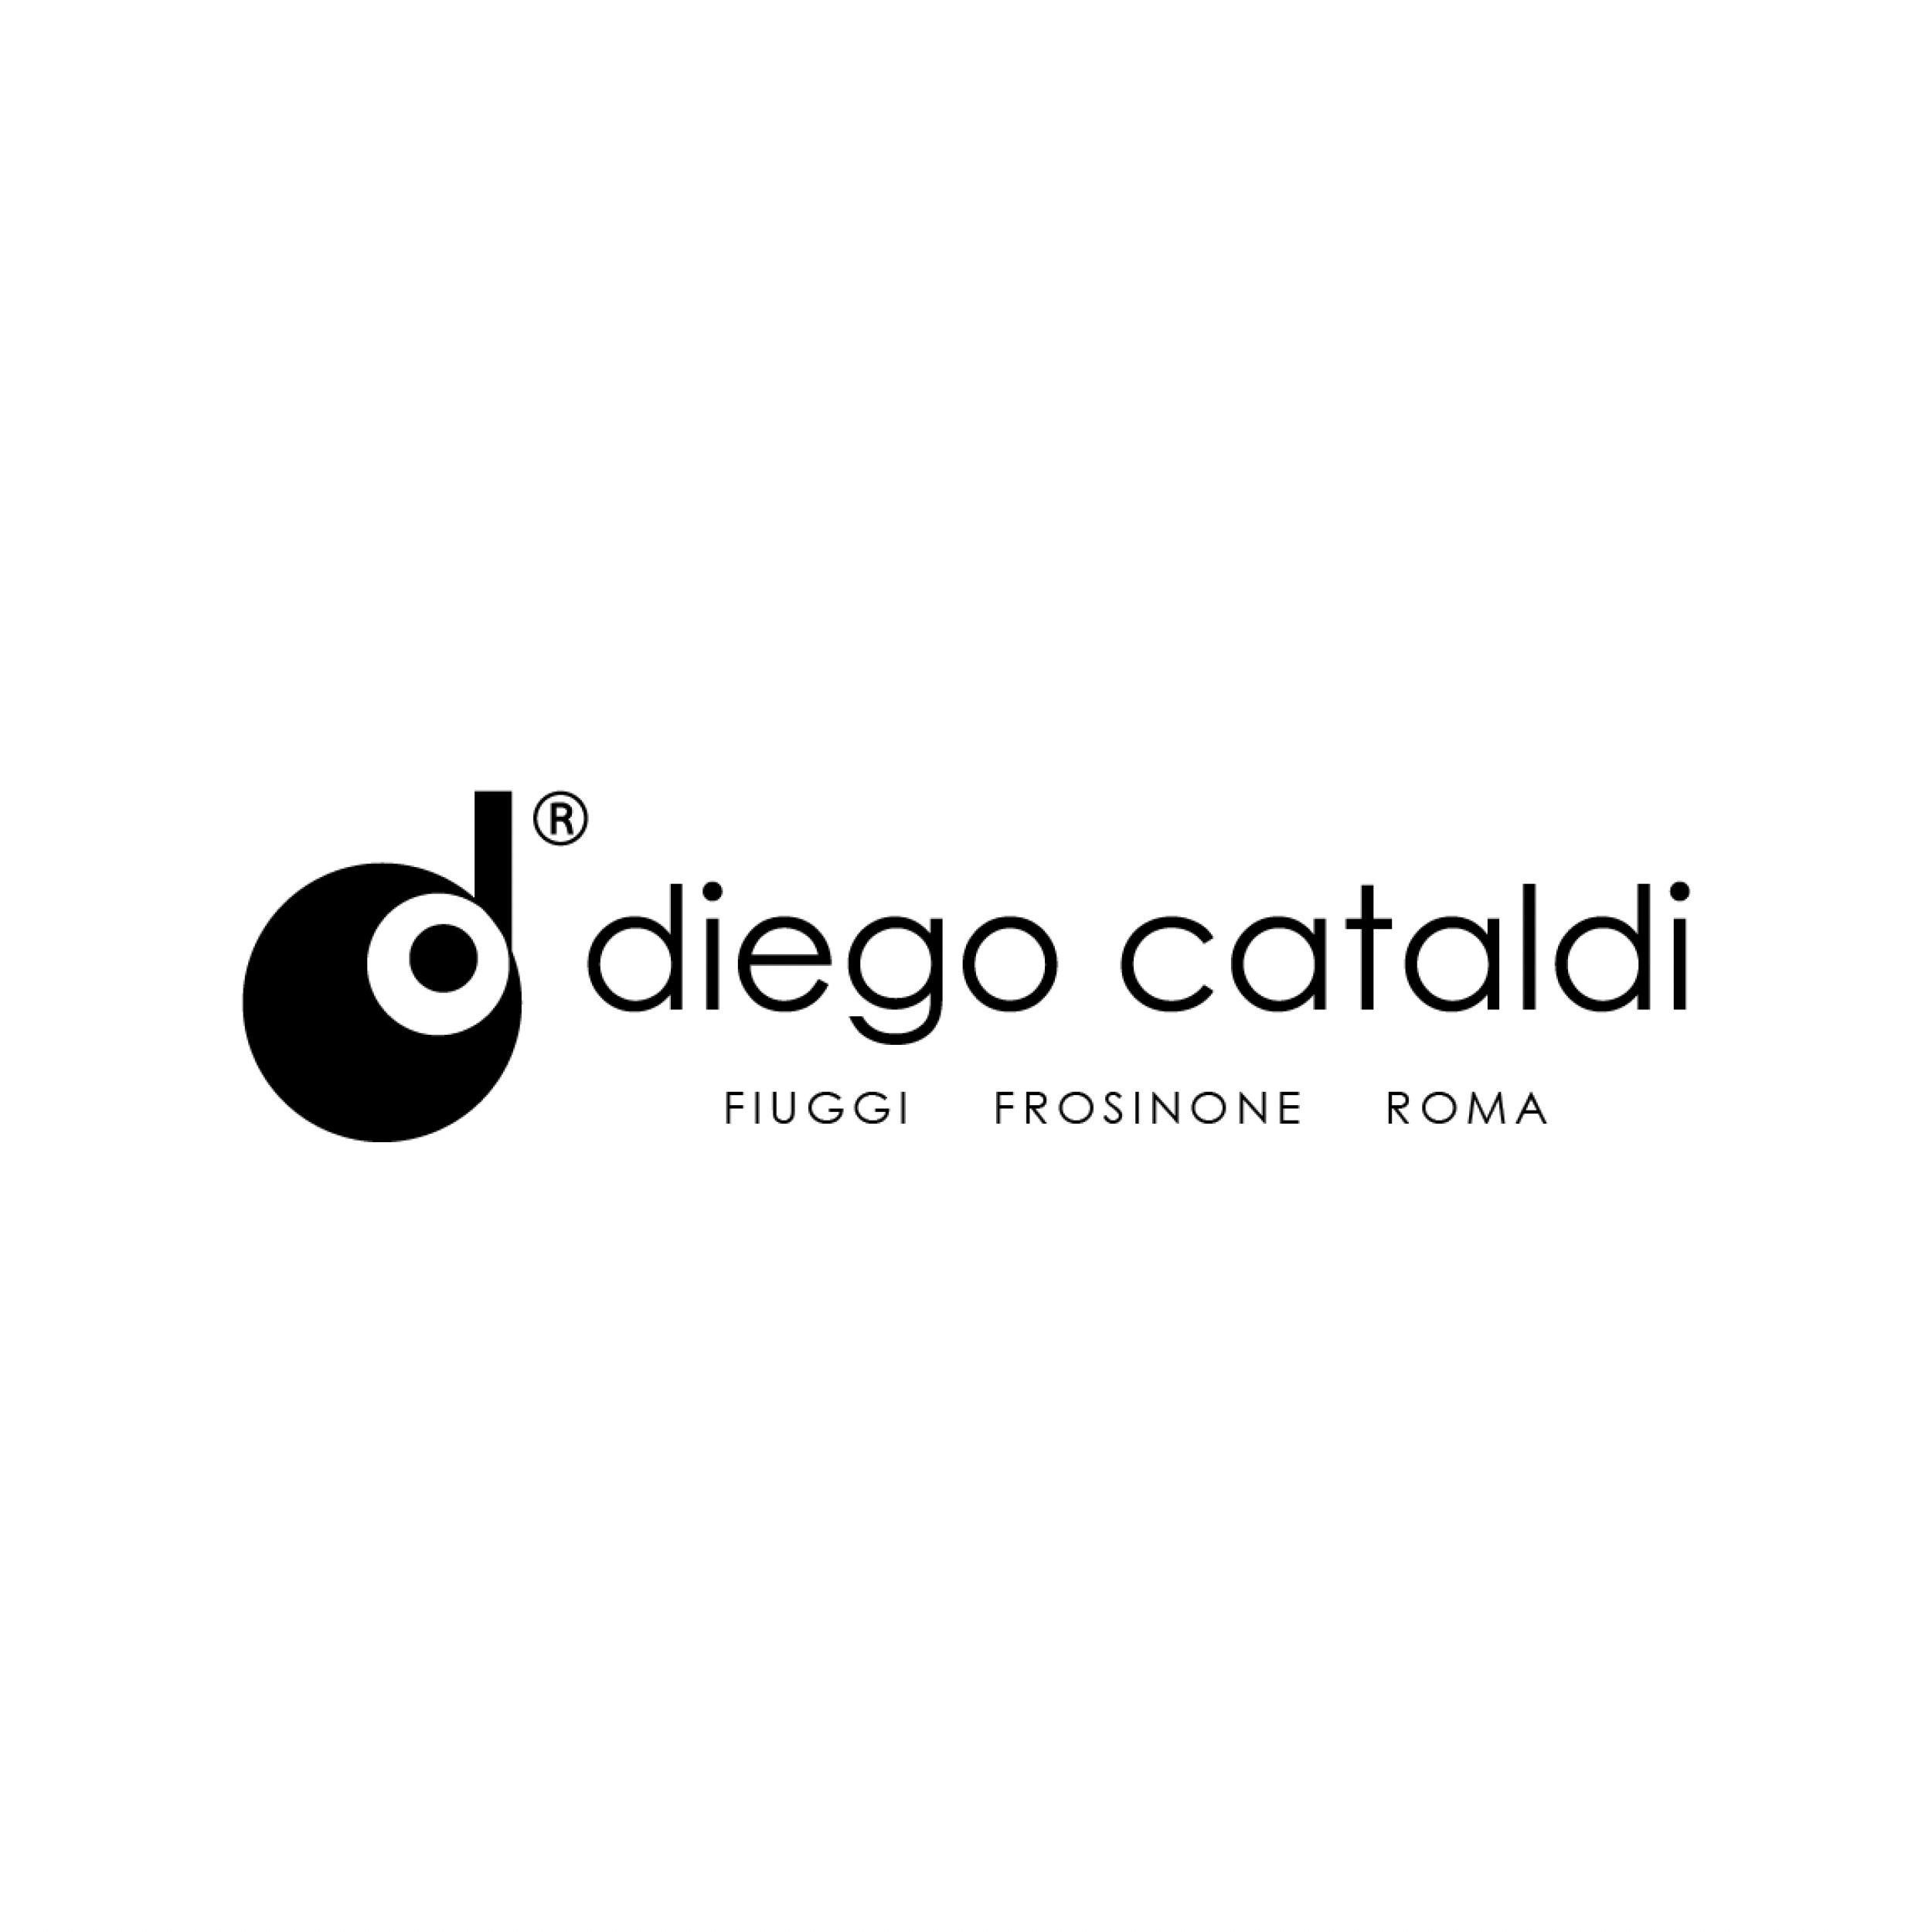 Diego Cataldi - Rivenditore Autorizzato Rolex - Orologerie Fiuggi